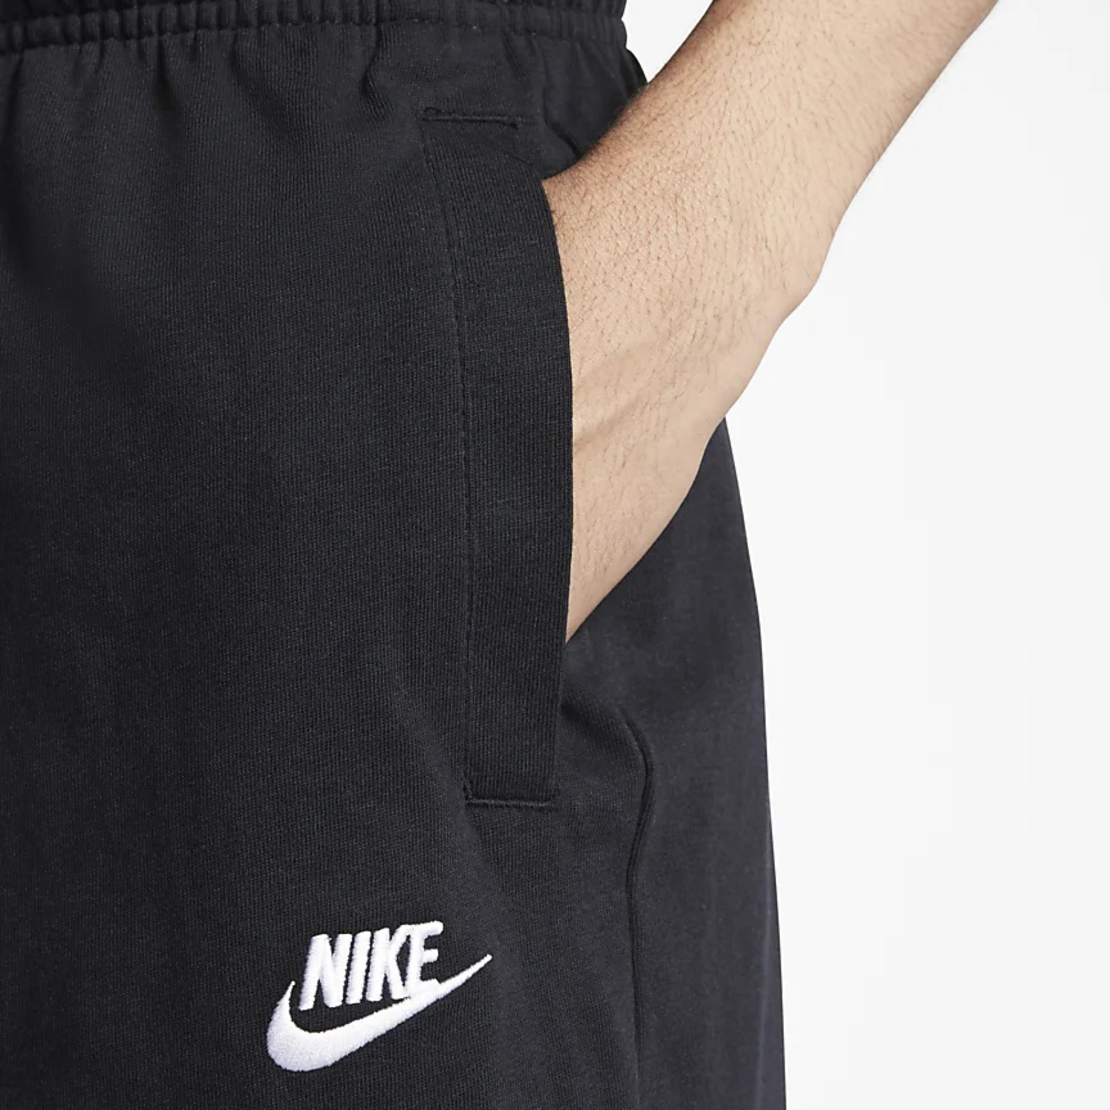 שורט נייק גברים | Nike Stretch Shorts